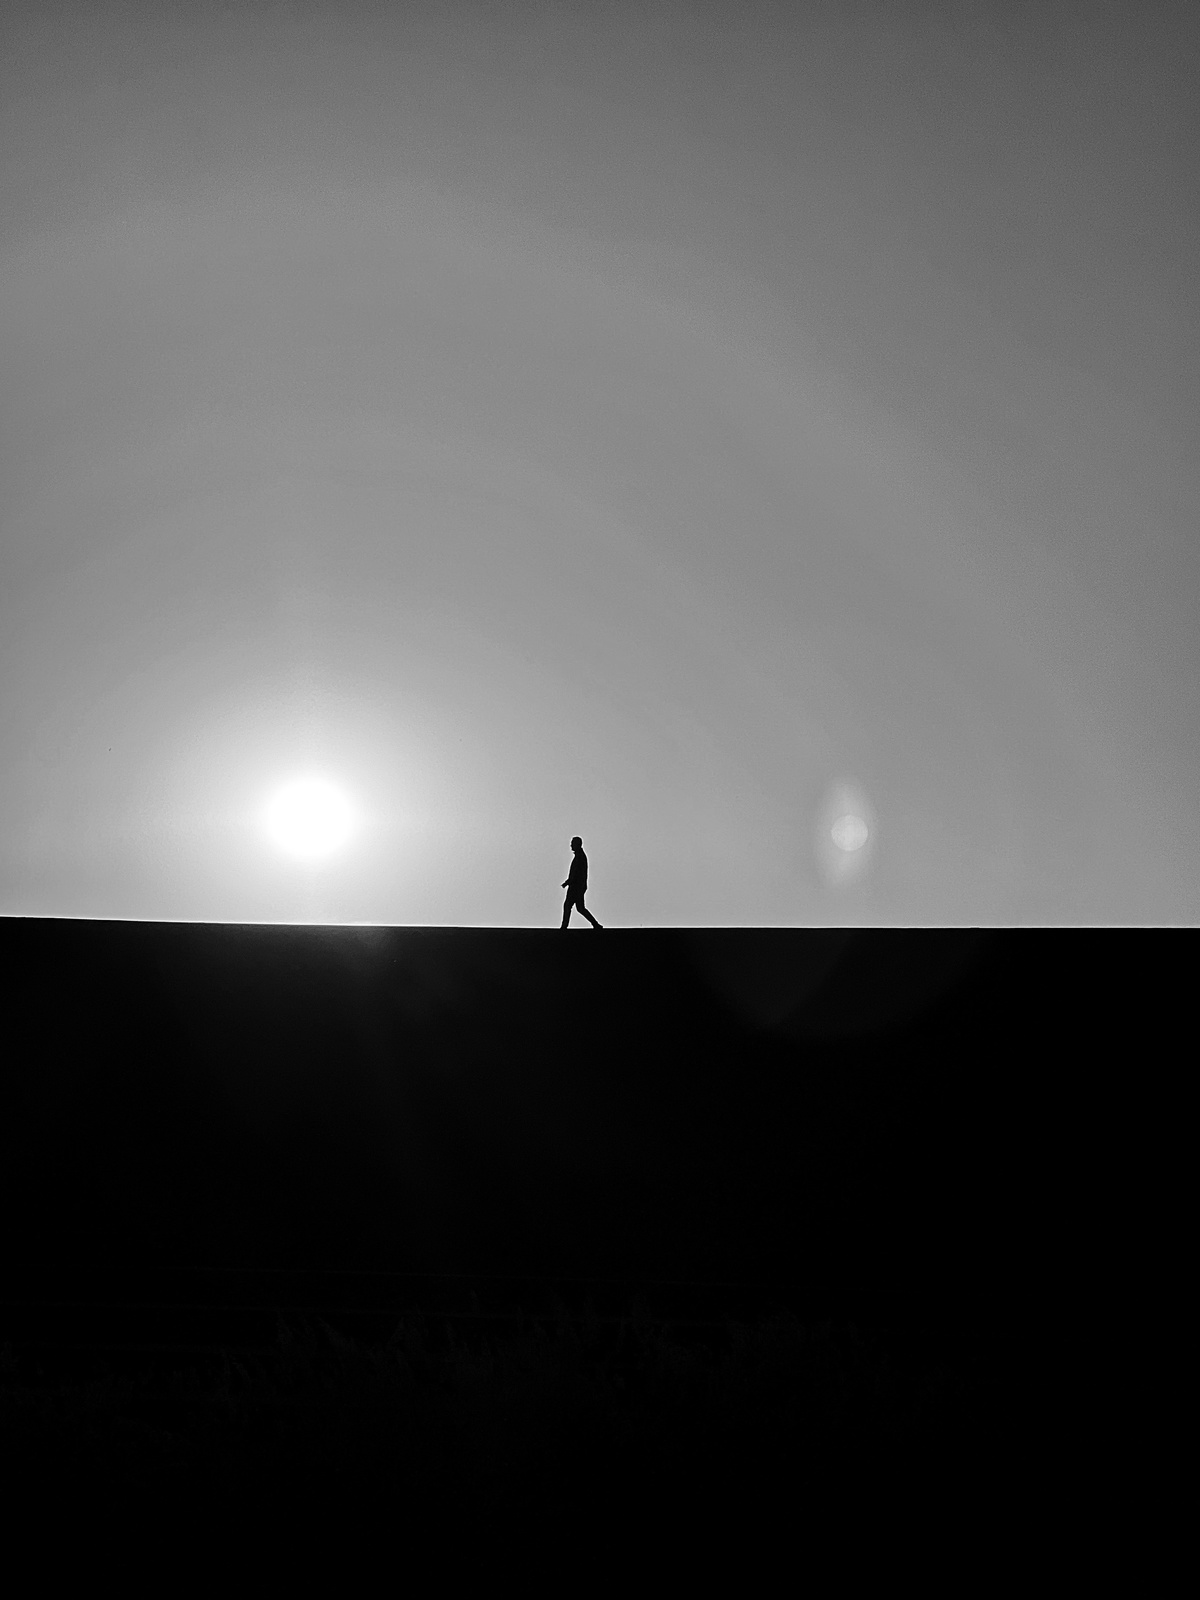 一个黑白剪影 一个人在山顶上行走 太阳低垂在天空中。